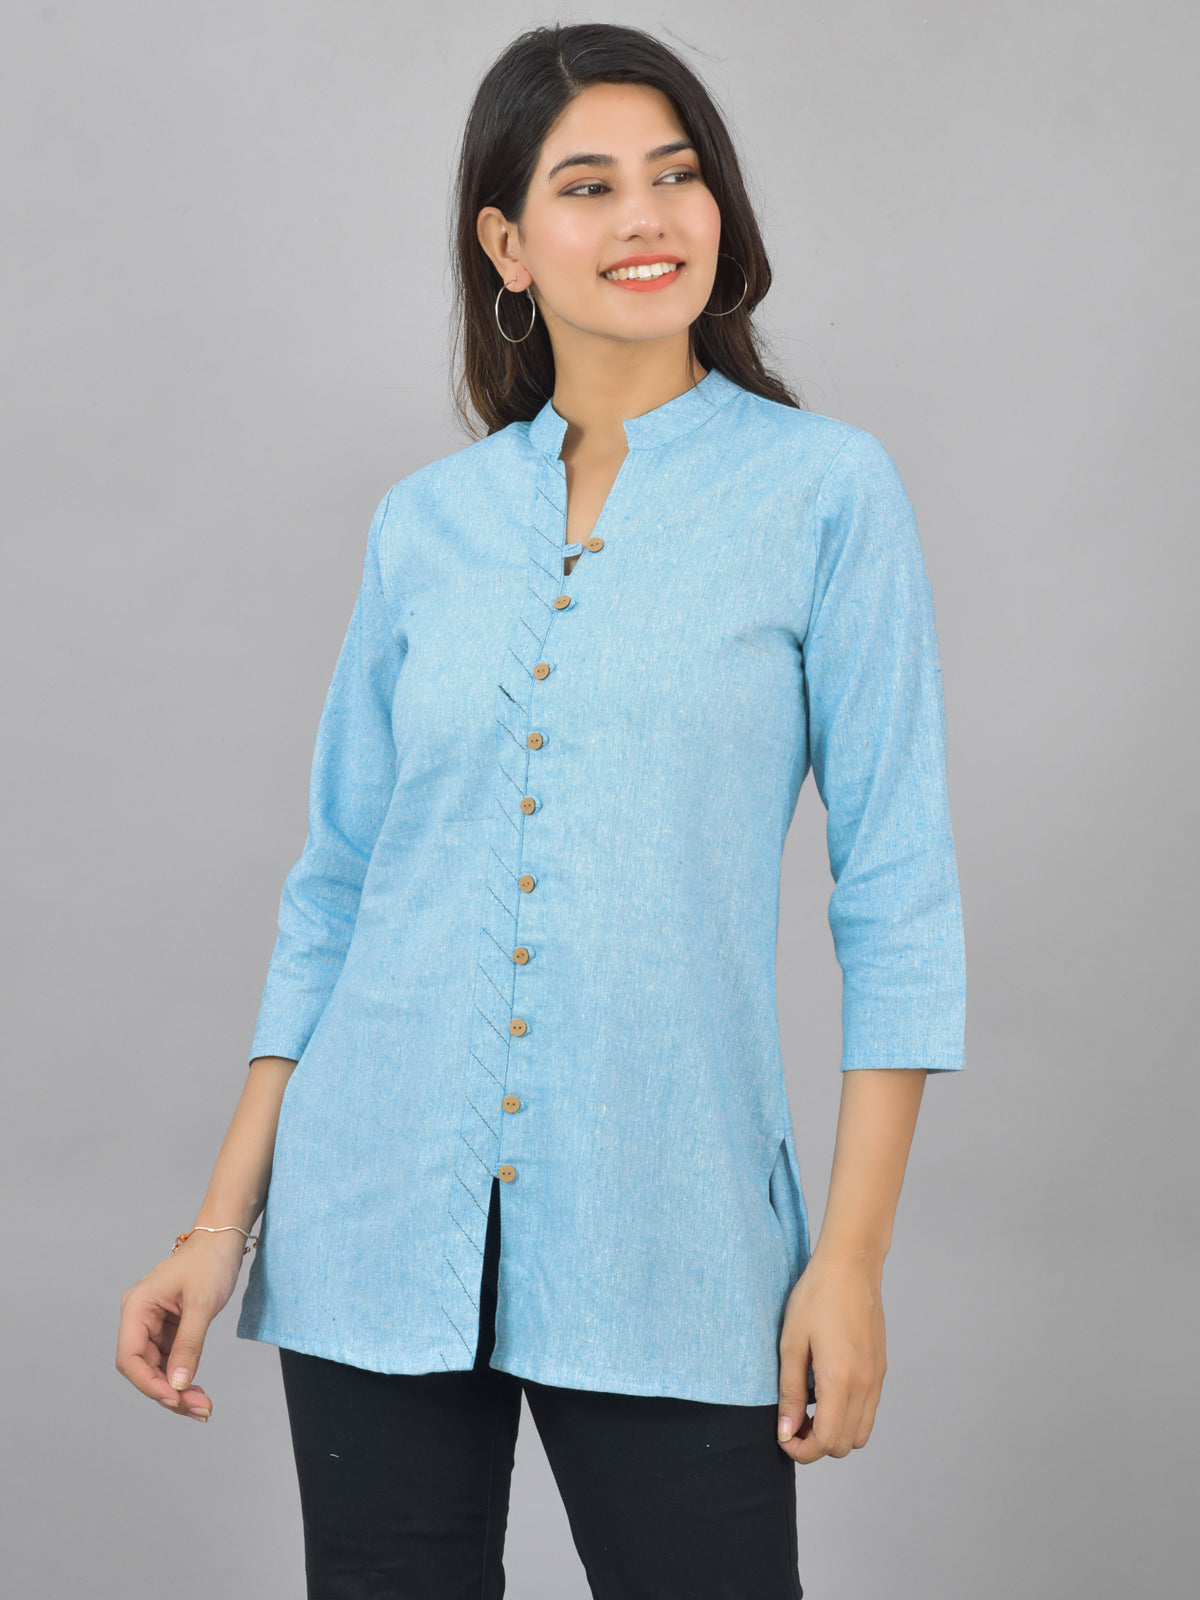 Womens Sky Blue Woven Design Handloom Cotton Frontslit Short Kurti